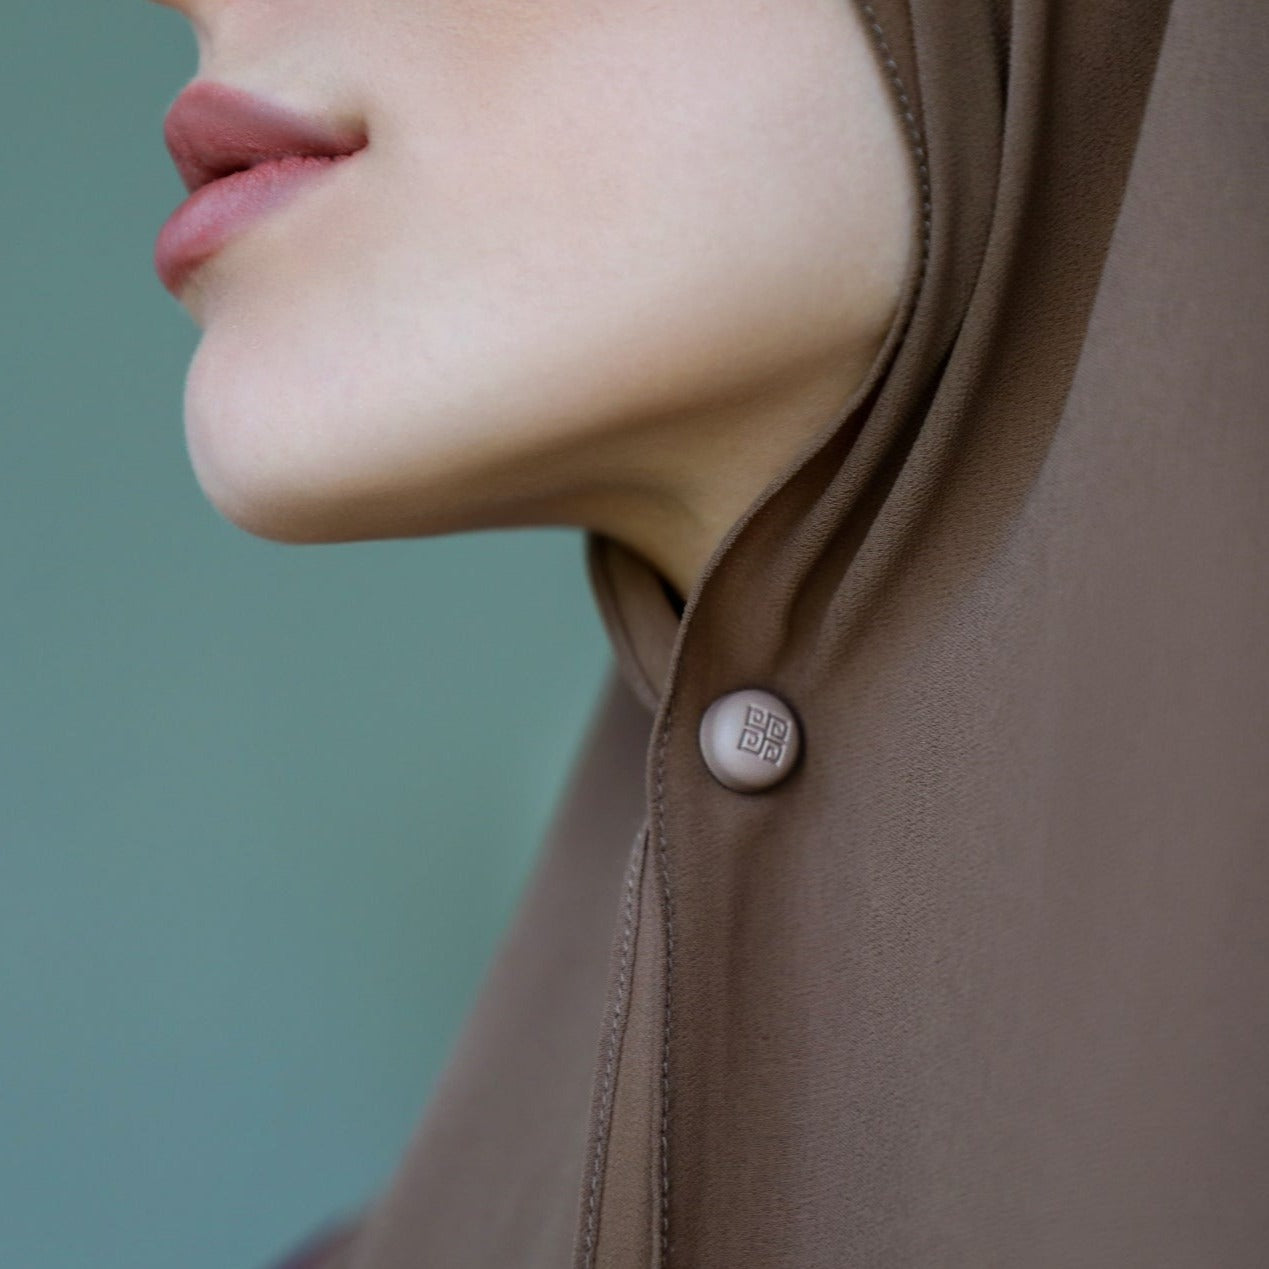 AMARIAH No - Snag Hijab Magnets